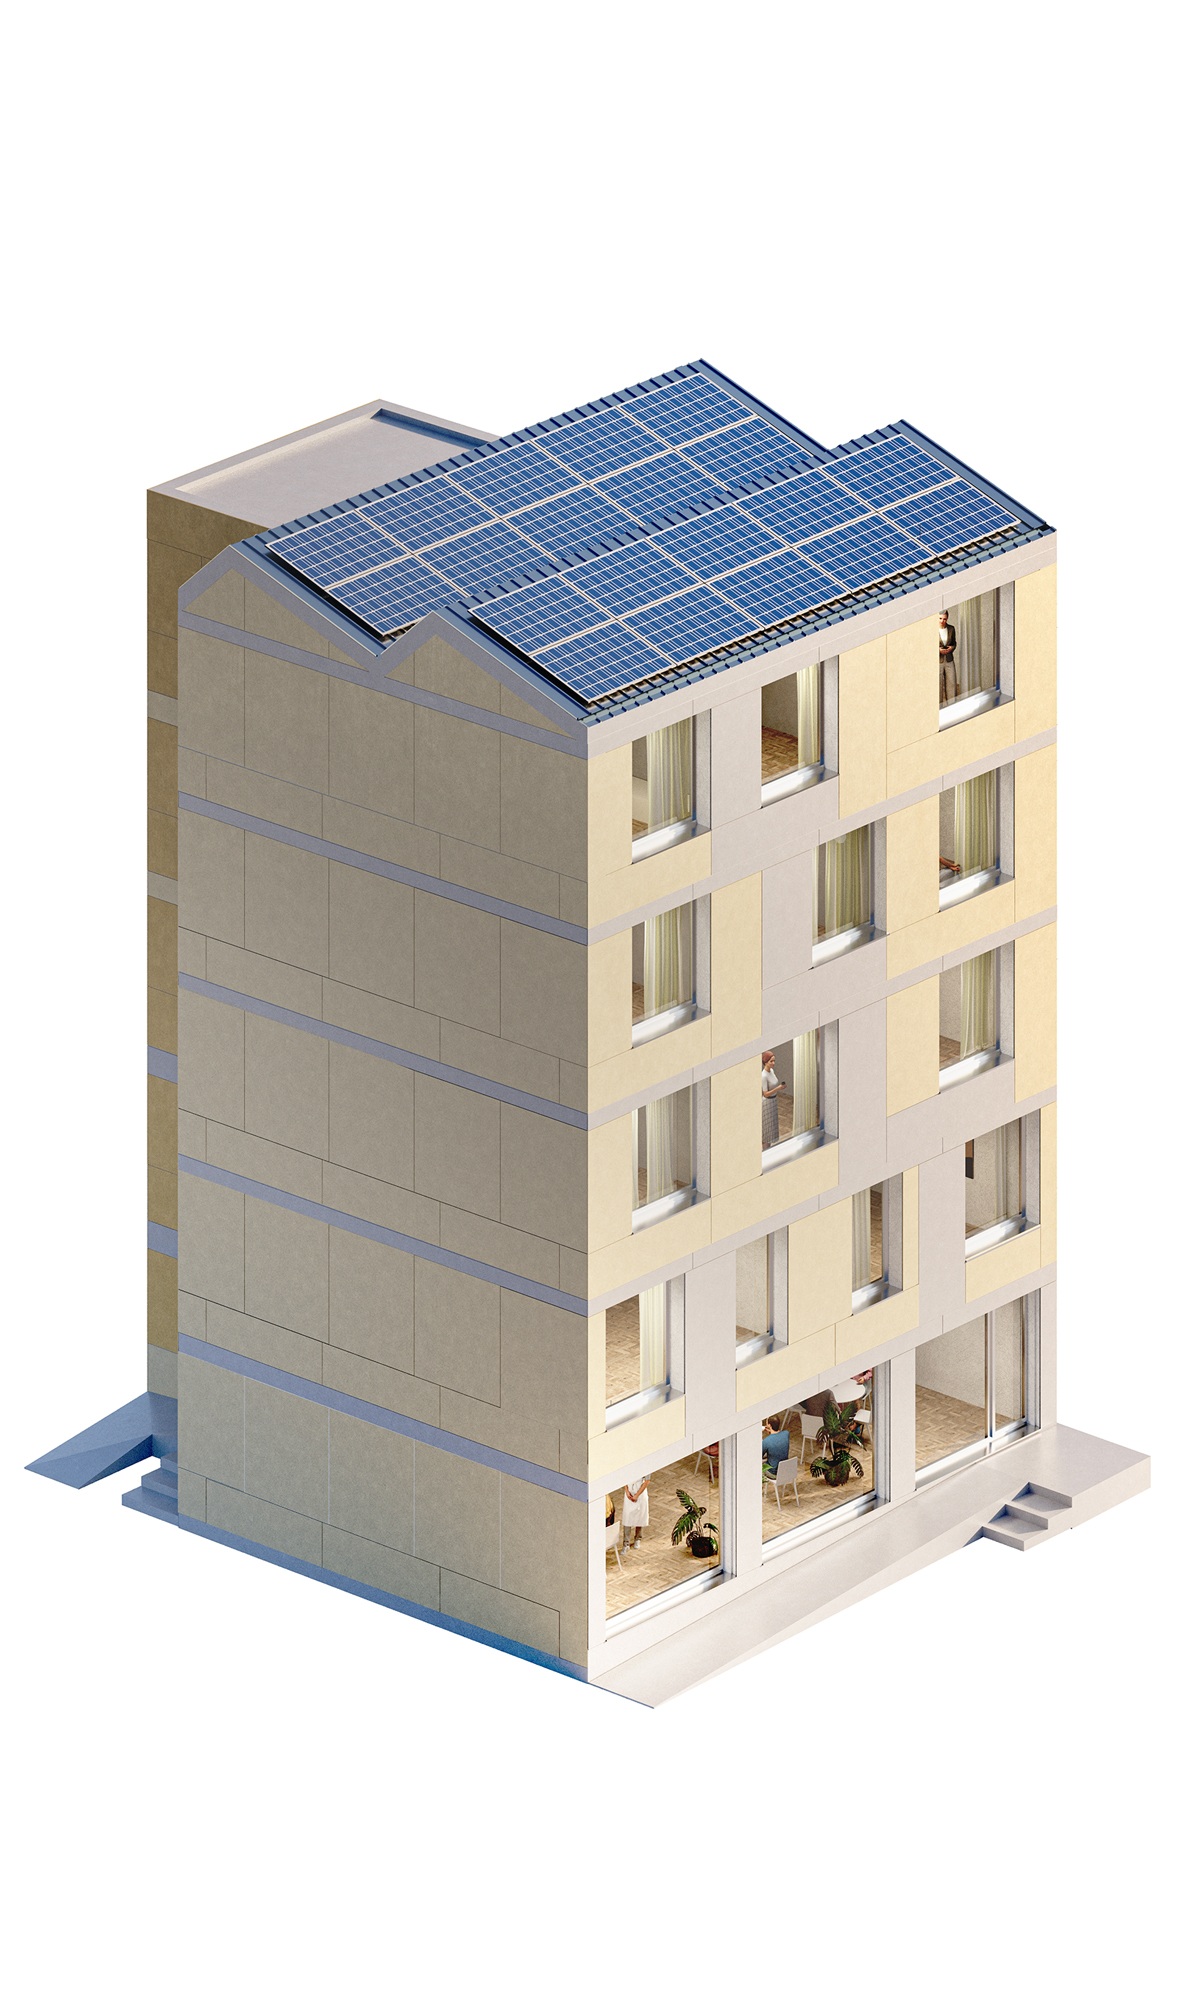 Visuel d’une densification à plusieurs étages, en bois, dans une zone urbaine